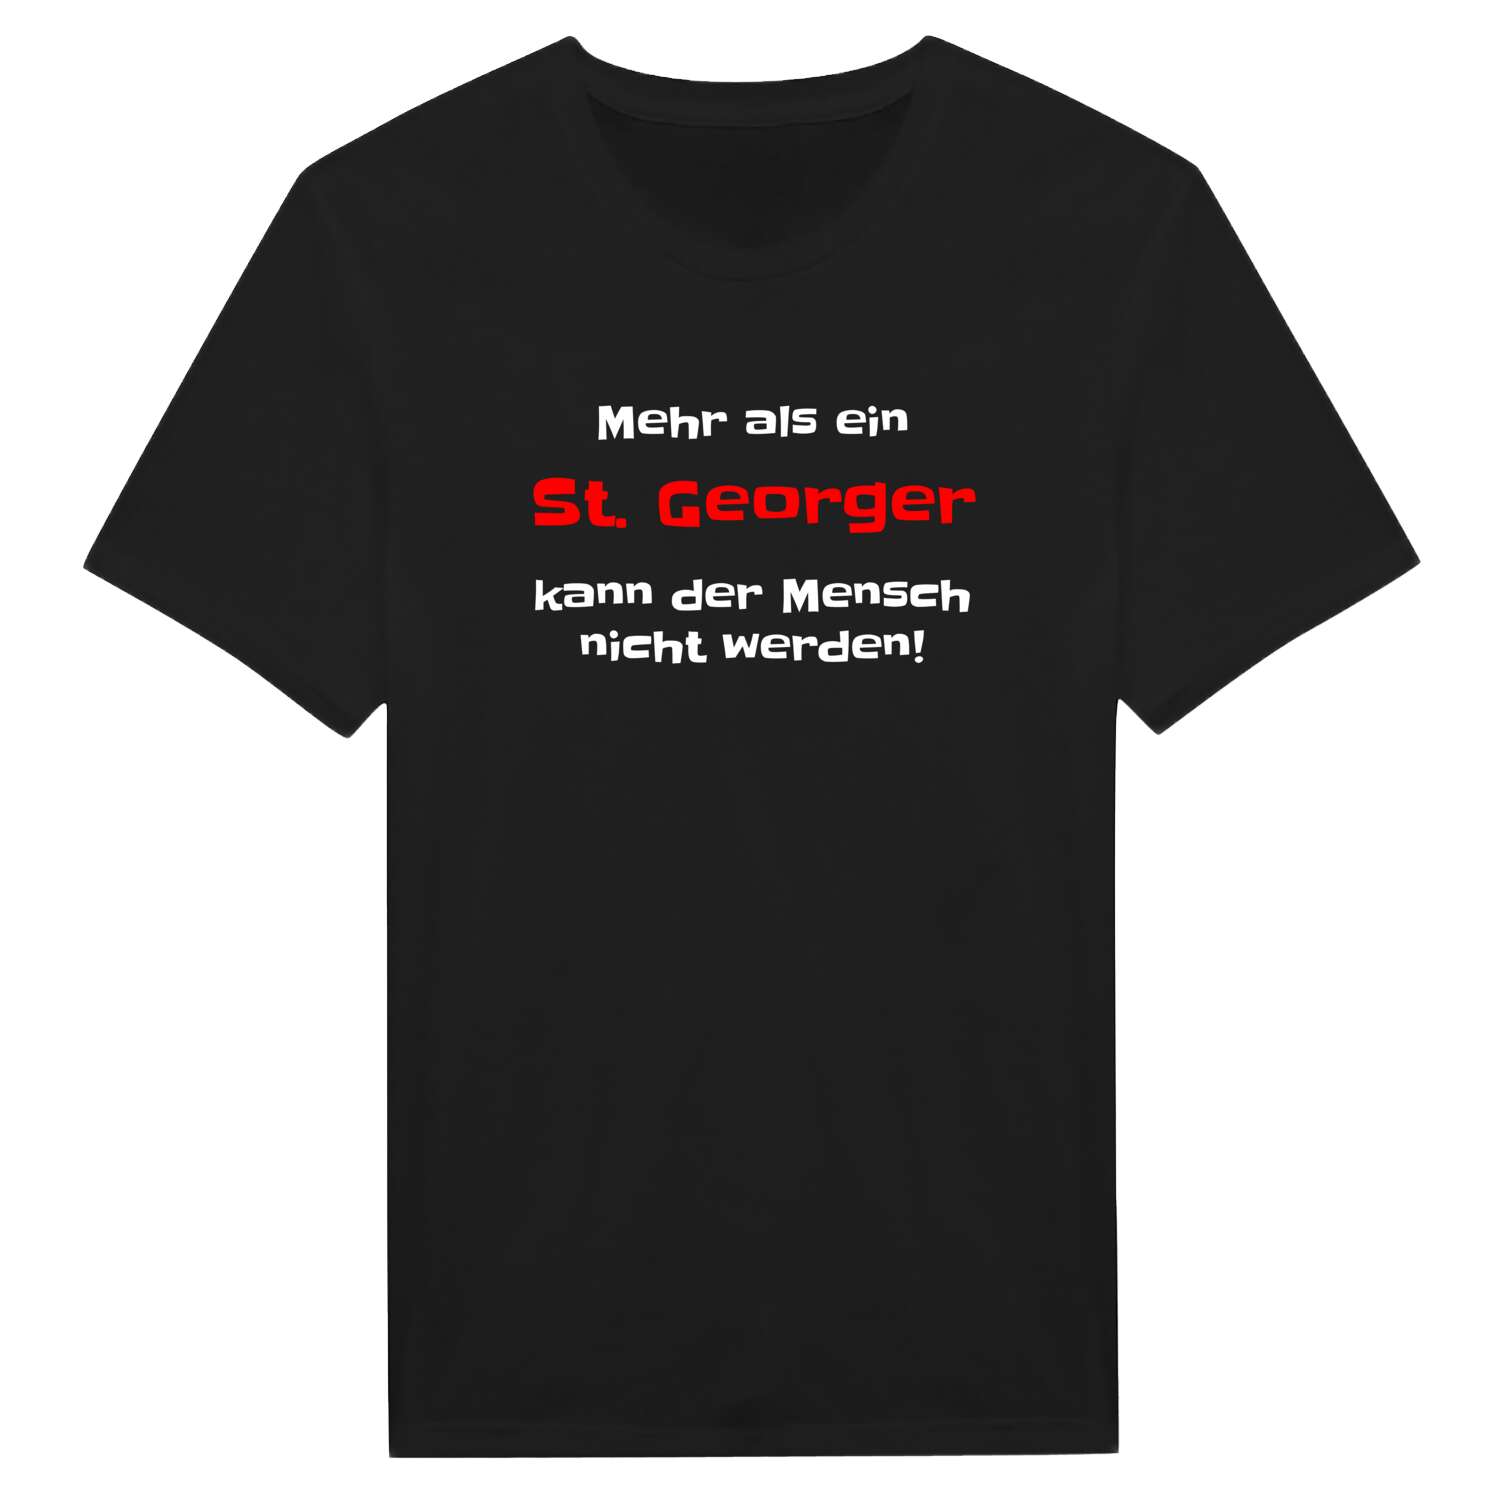 St. Georg T-Shirt »Mehr als ein«